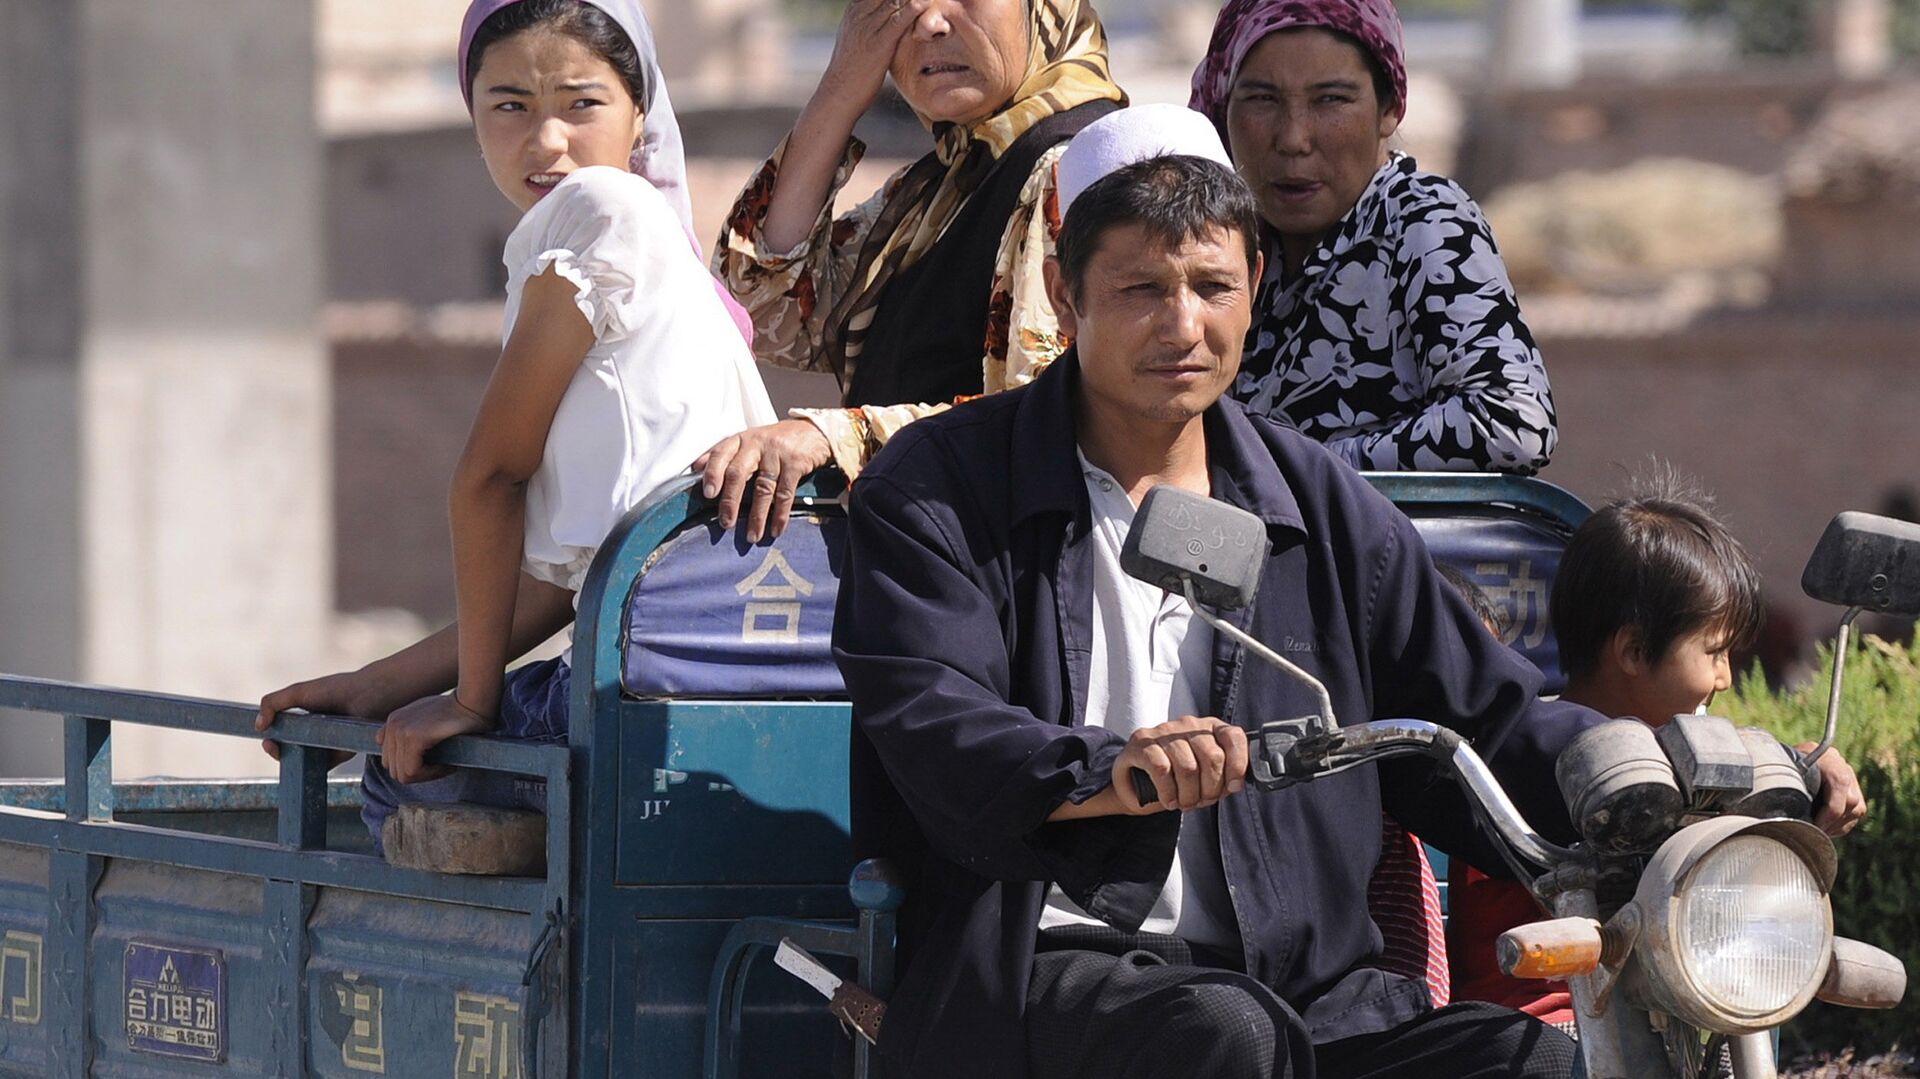 أفراد من أقلية مسلمة في غرب الصين في منطقة شينجيانغ المسلمة بشكل رئيسي في 30 يوليو 2008 - سبوتنيك عربي, 1920, 12.05.2021